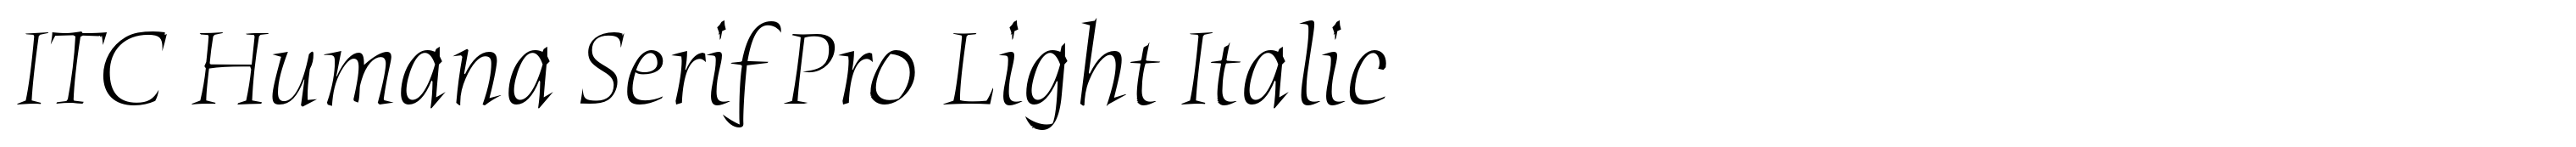 ITC Humana Serif Pro Light Italic